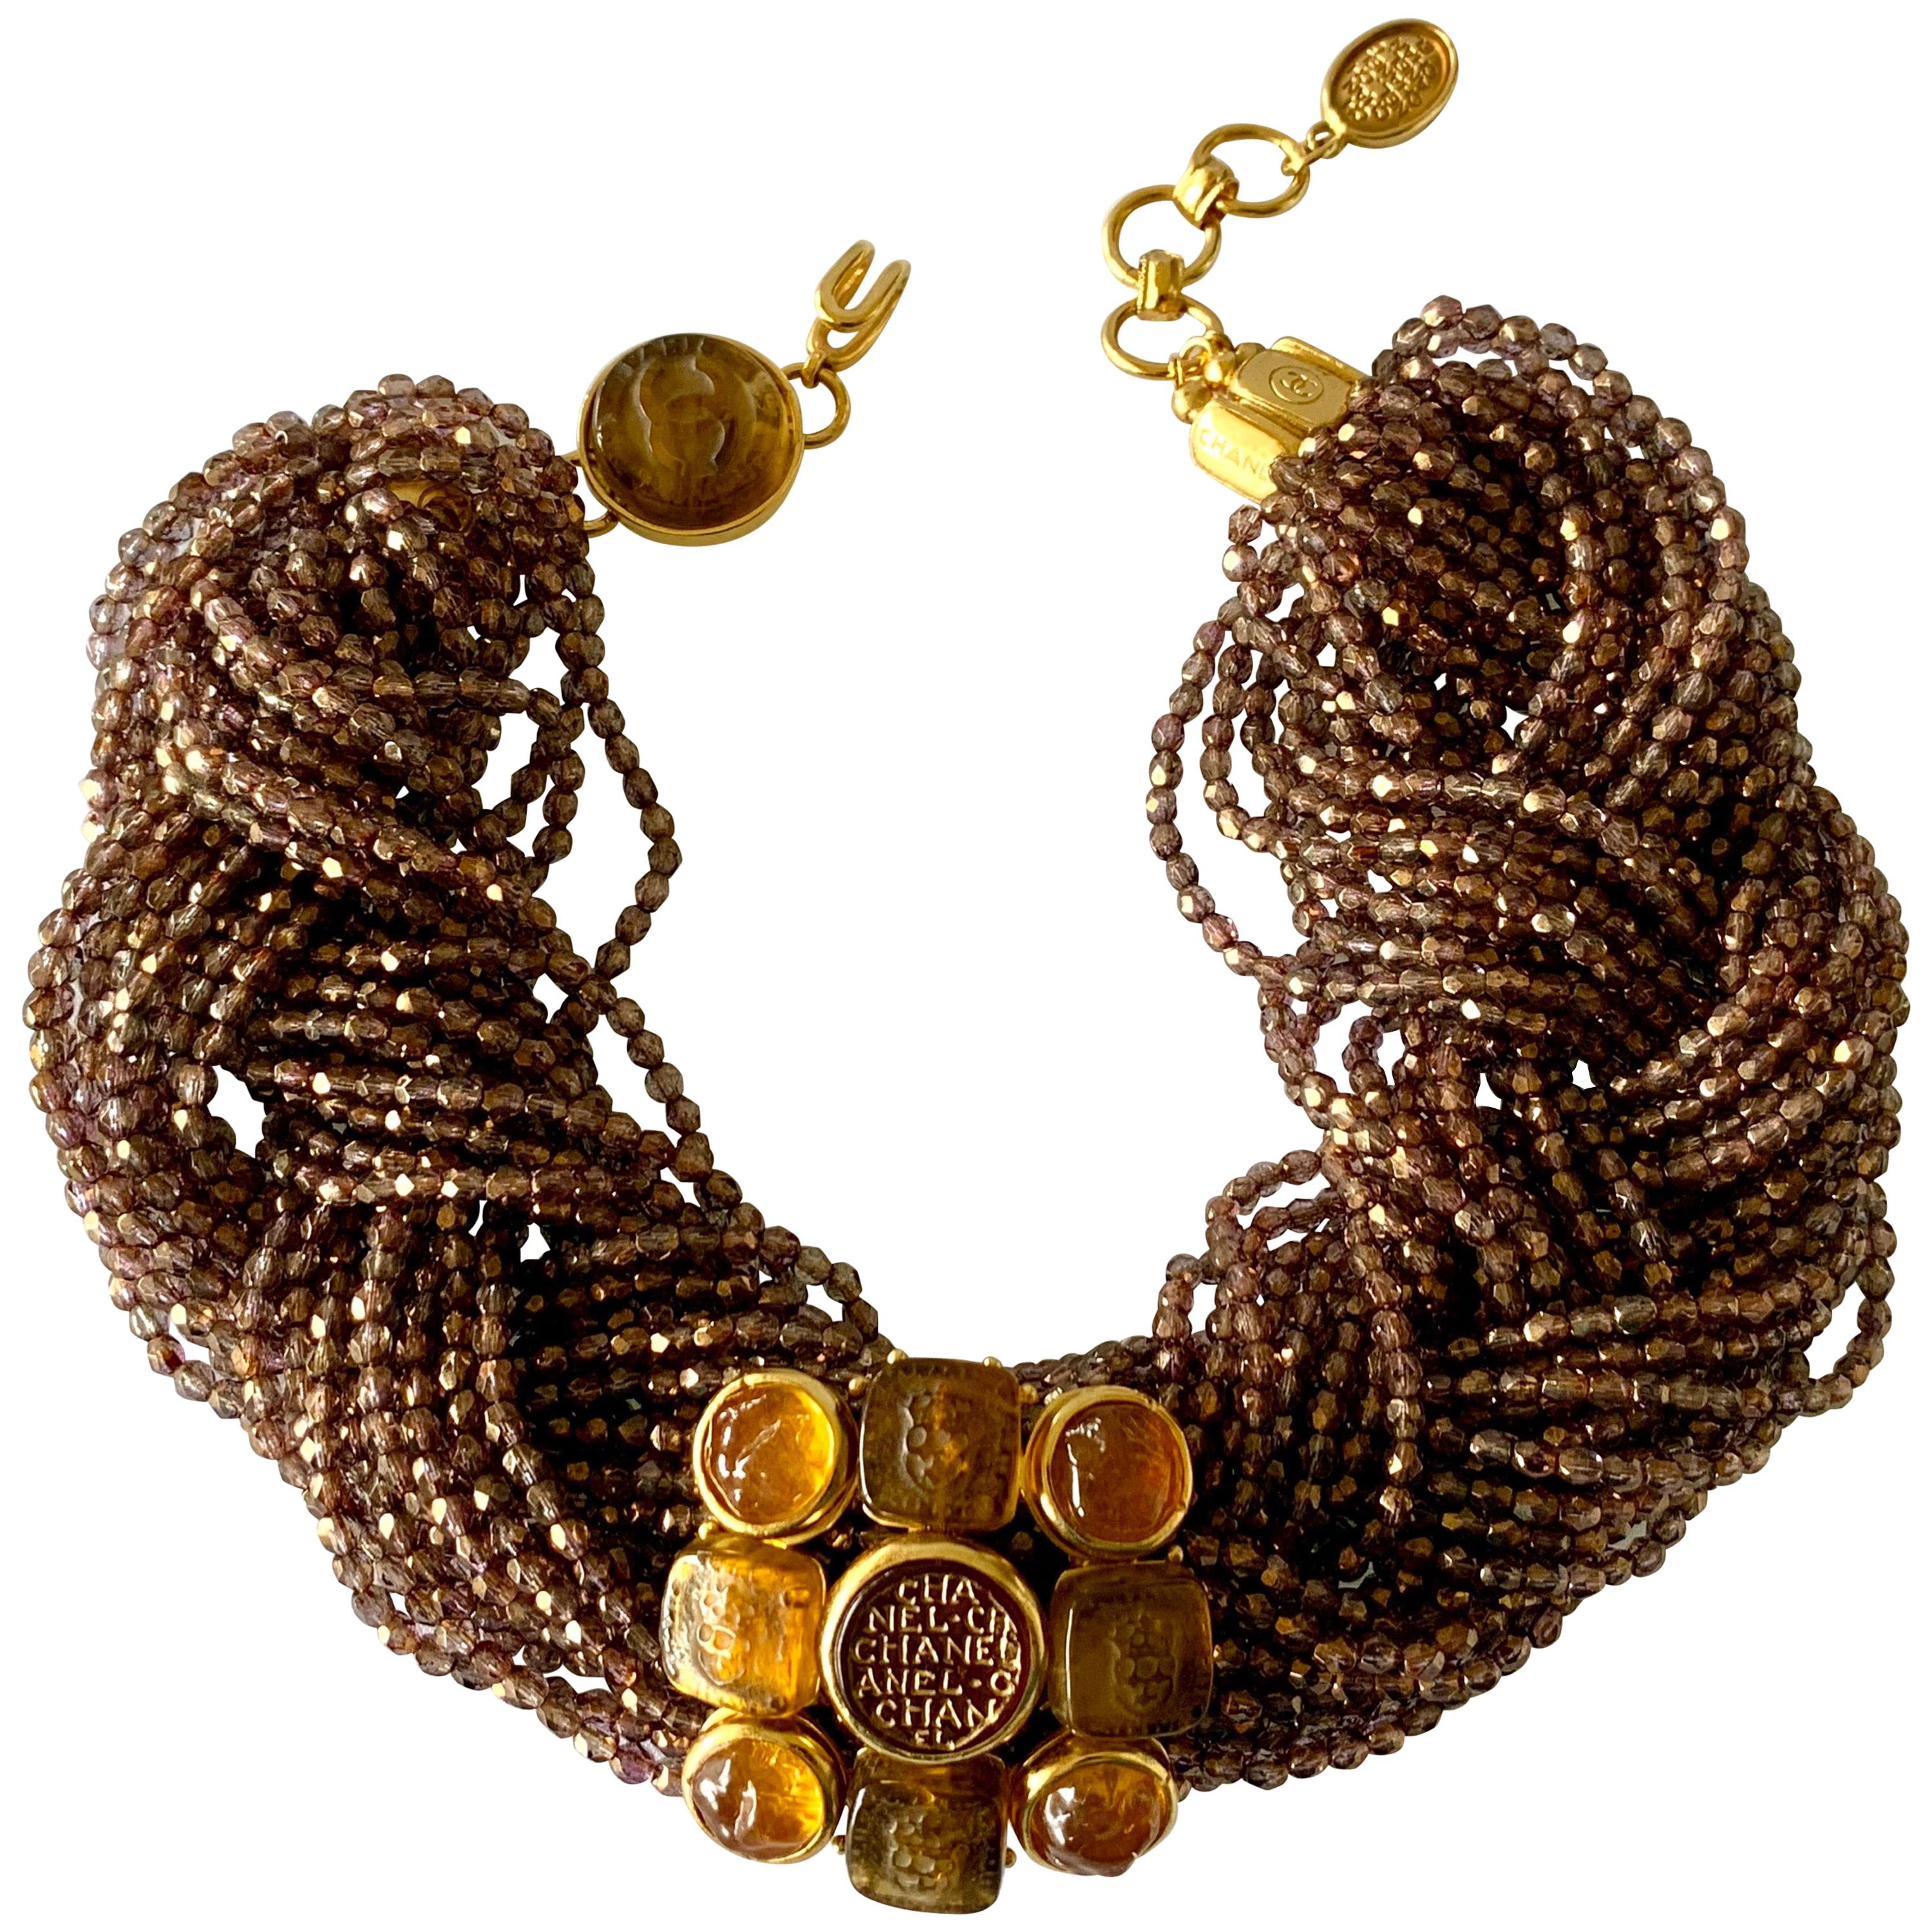 Chanel, collier fantaisie vintage en or à plusieurs rangs de perles et intailles entaillées 